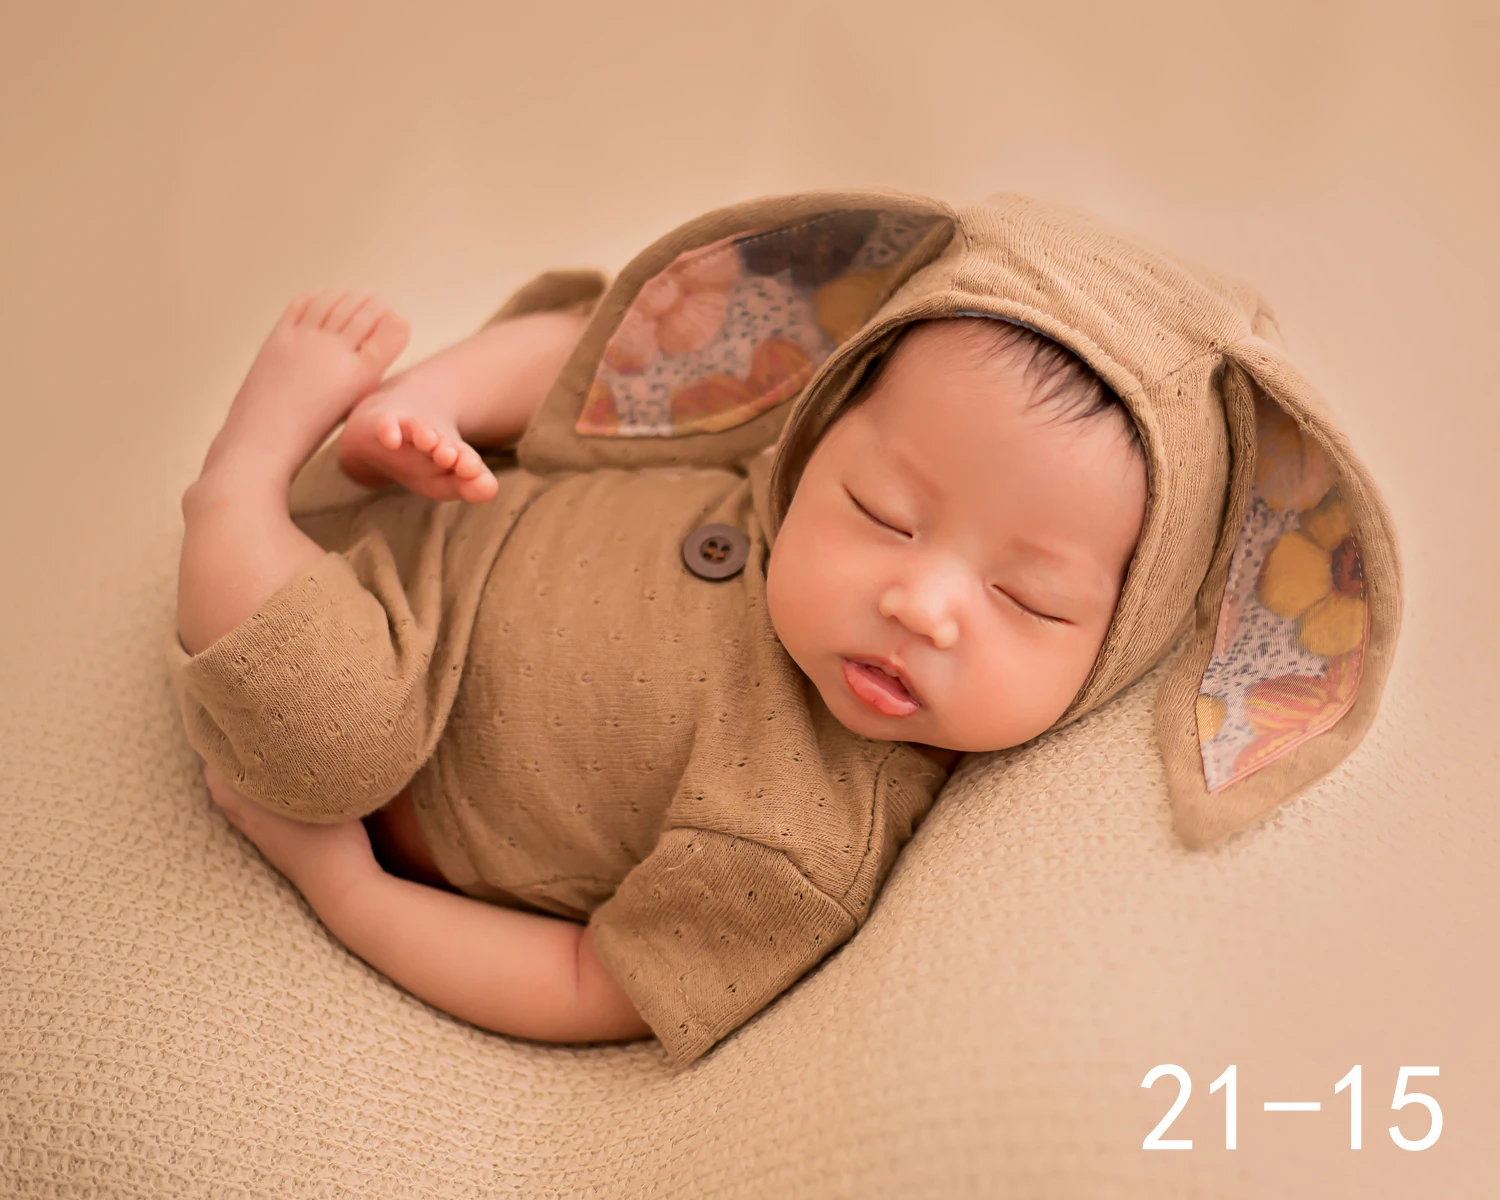 Dvotinst новорожденных реквизит для фотосъемки Детские уши чепчик наряды шляпа комплект одежды Fotografia аксессуары студийные фотосессии реквизит